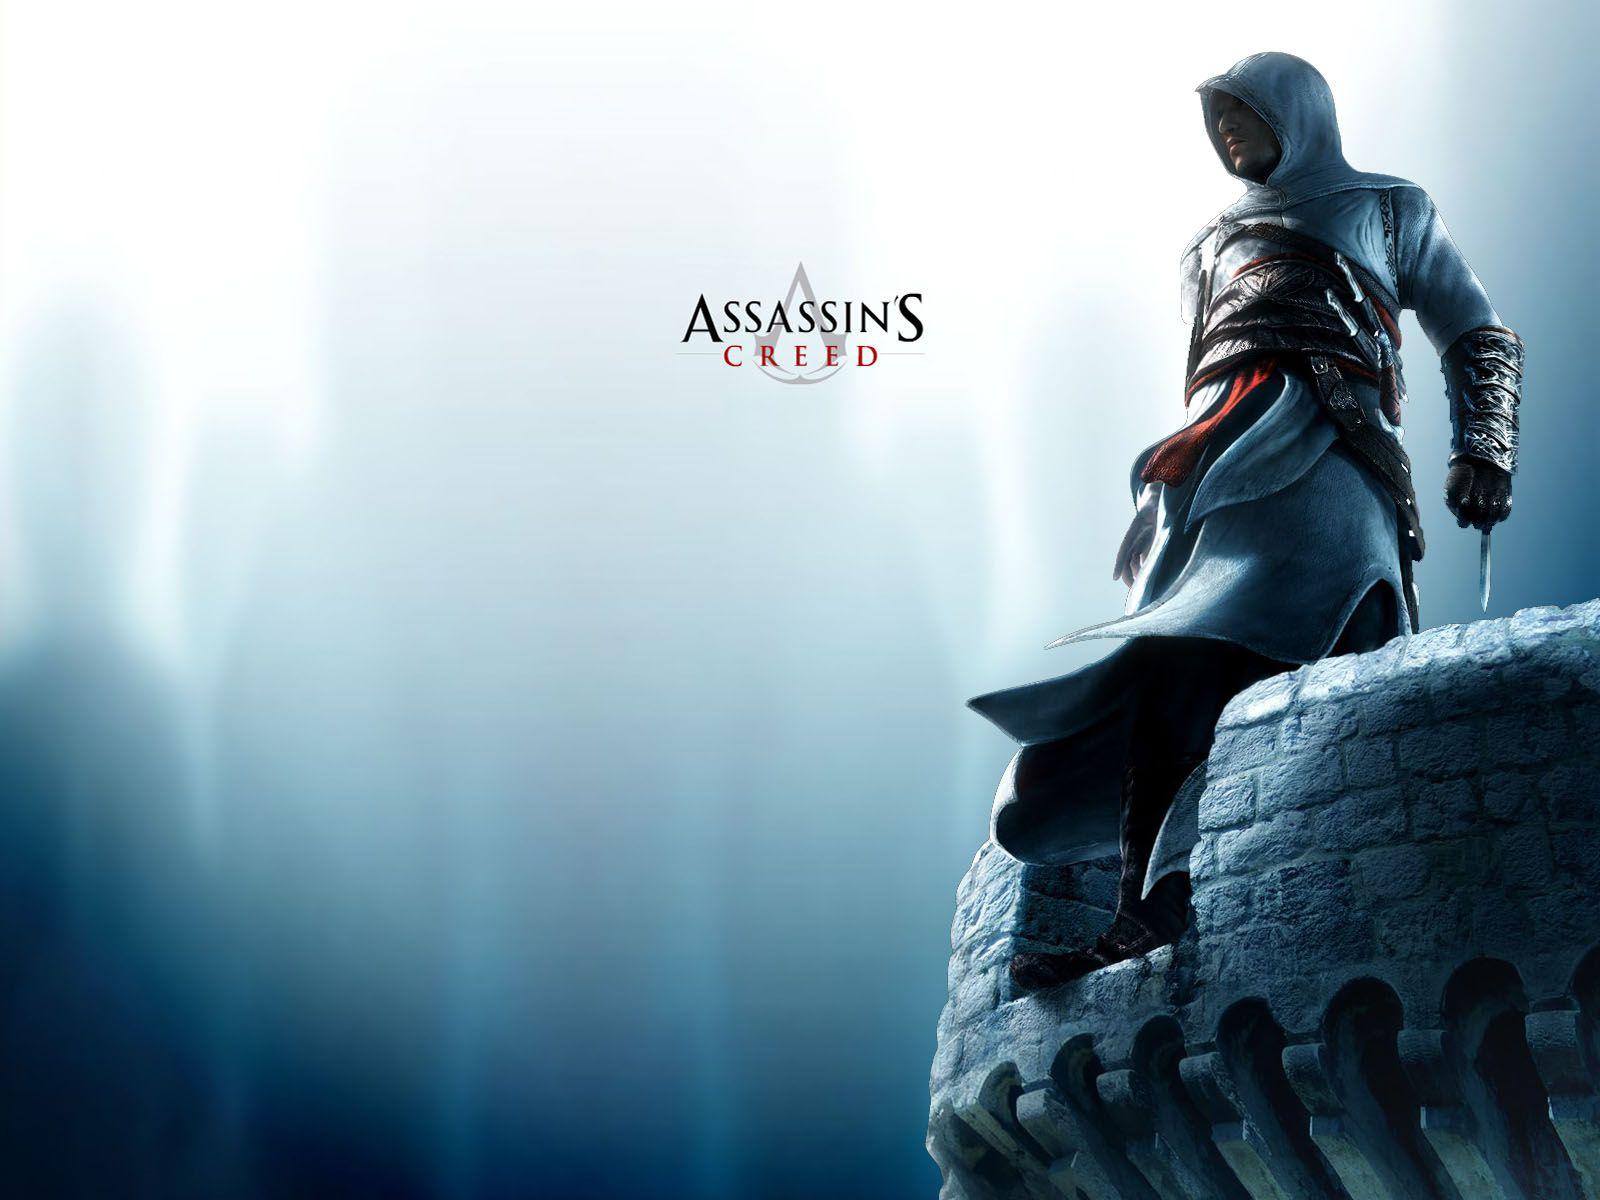 Assassin's Creed Wallpapers - Top Những Hình Ảnh Đẹp